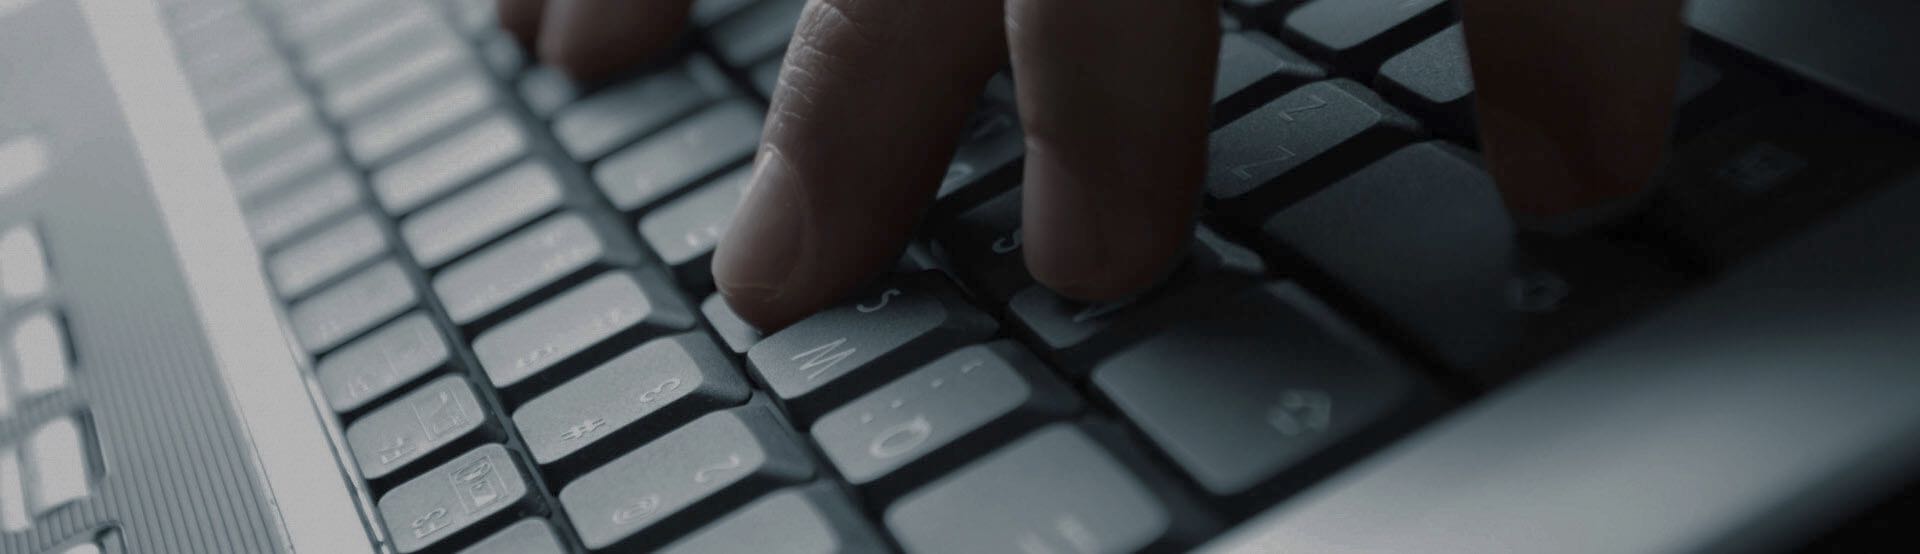 Captura donde se puede apreciar las manos de una persona introduciendo palabras usando el teclado del computador